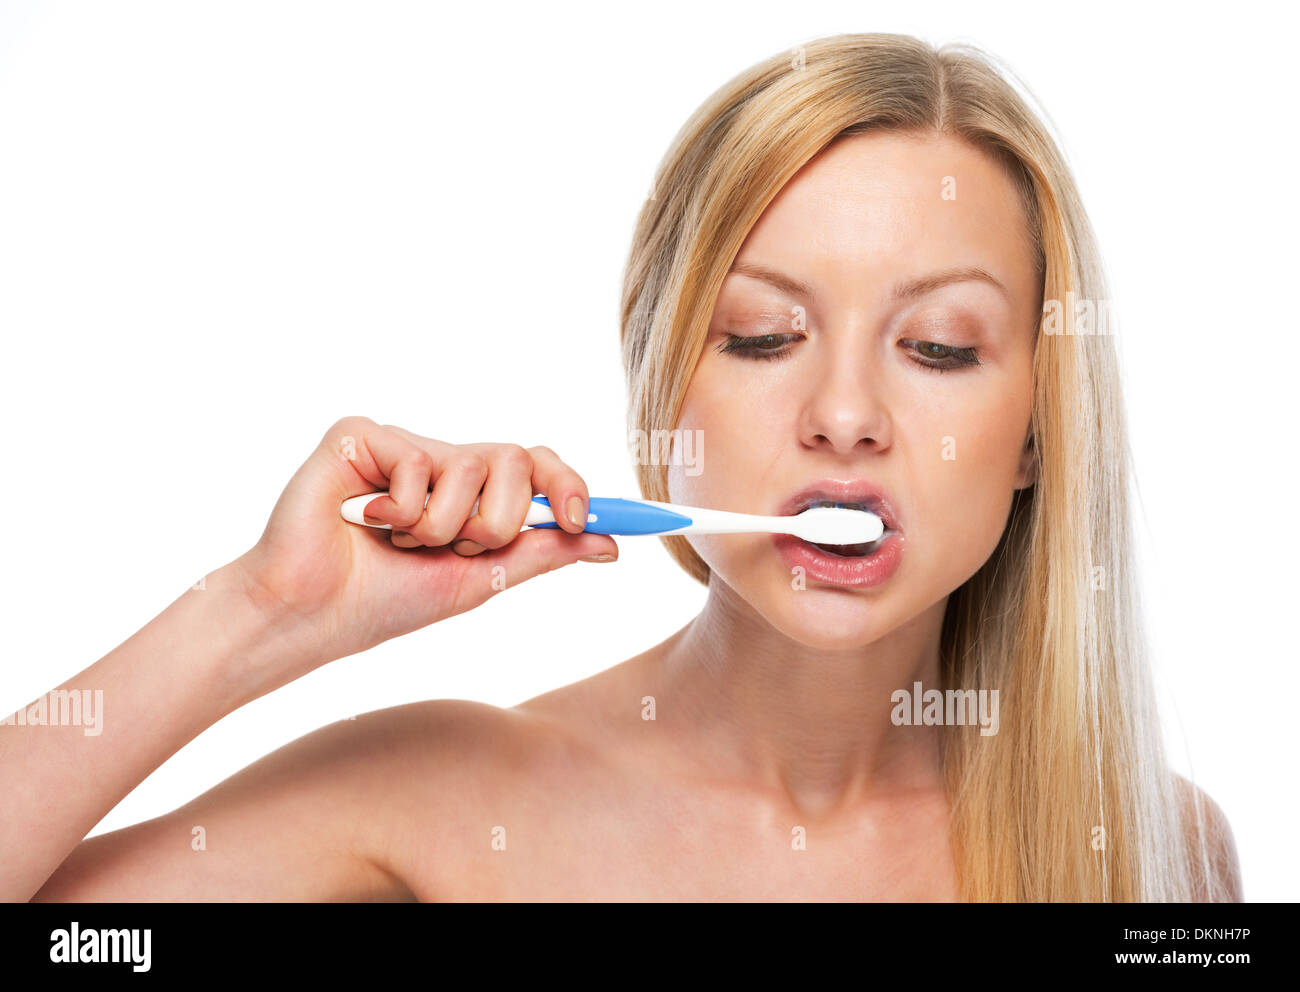 Portrait of teenage girl brushing teeth Stock Photo